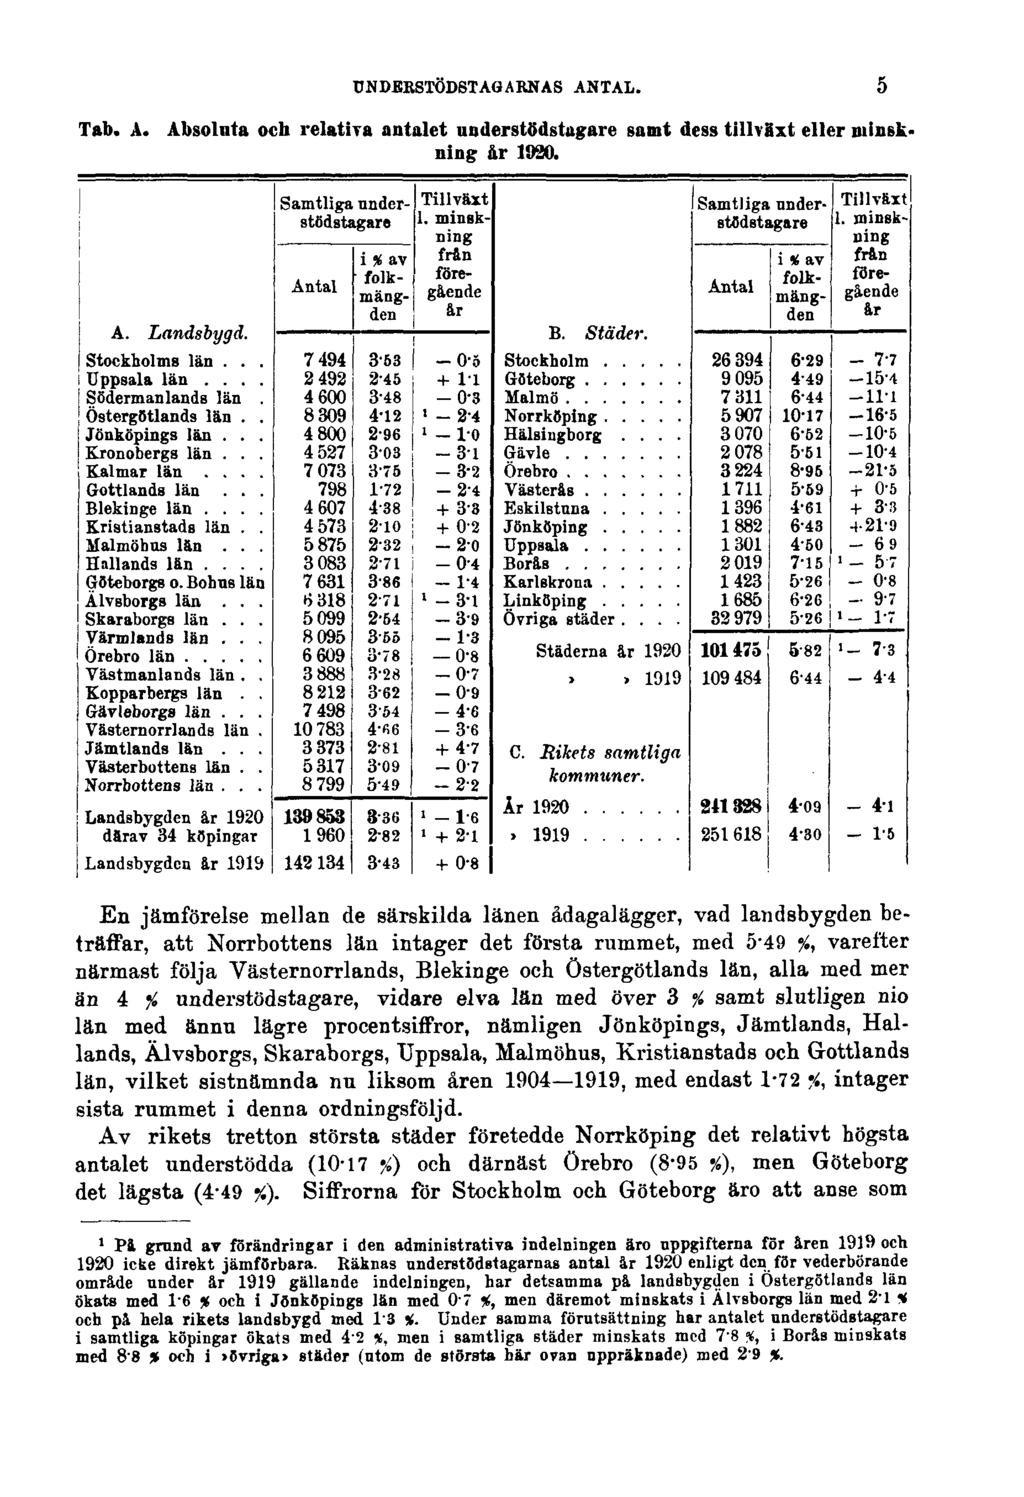 UNDERSTÖDSTAGARNAS ANTAL. Tab. A. Absoluta och relativa antalet understödstagare samt dess tillväxt eller minskning år 1920.